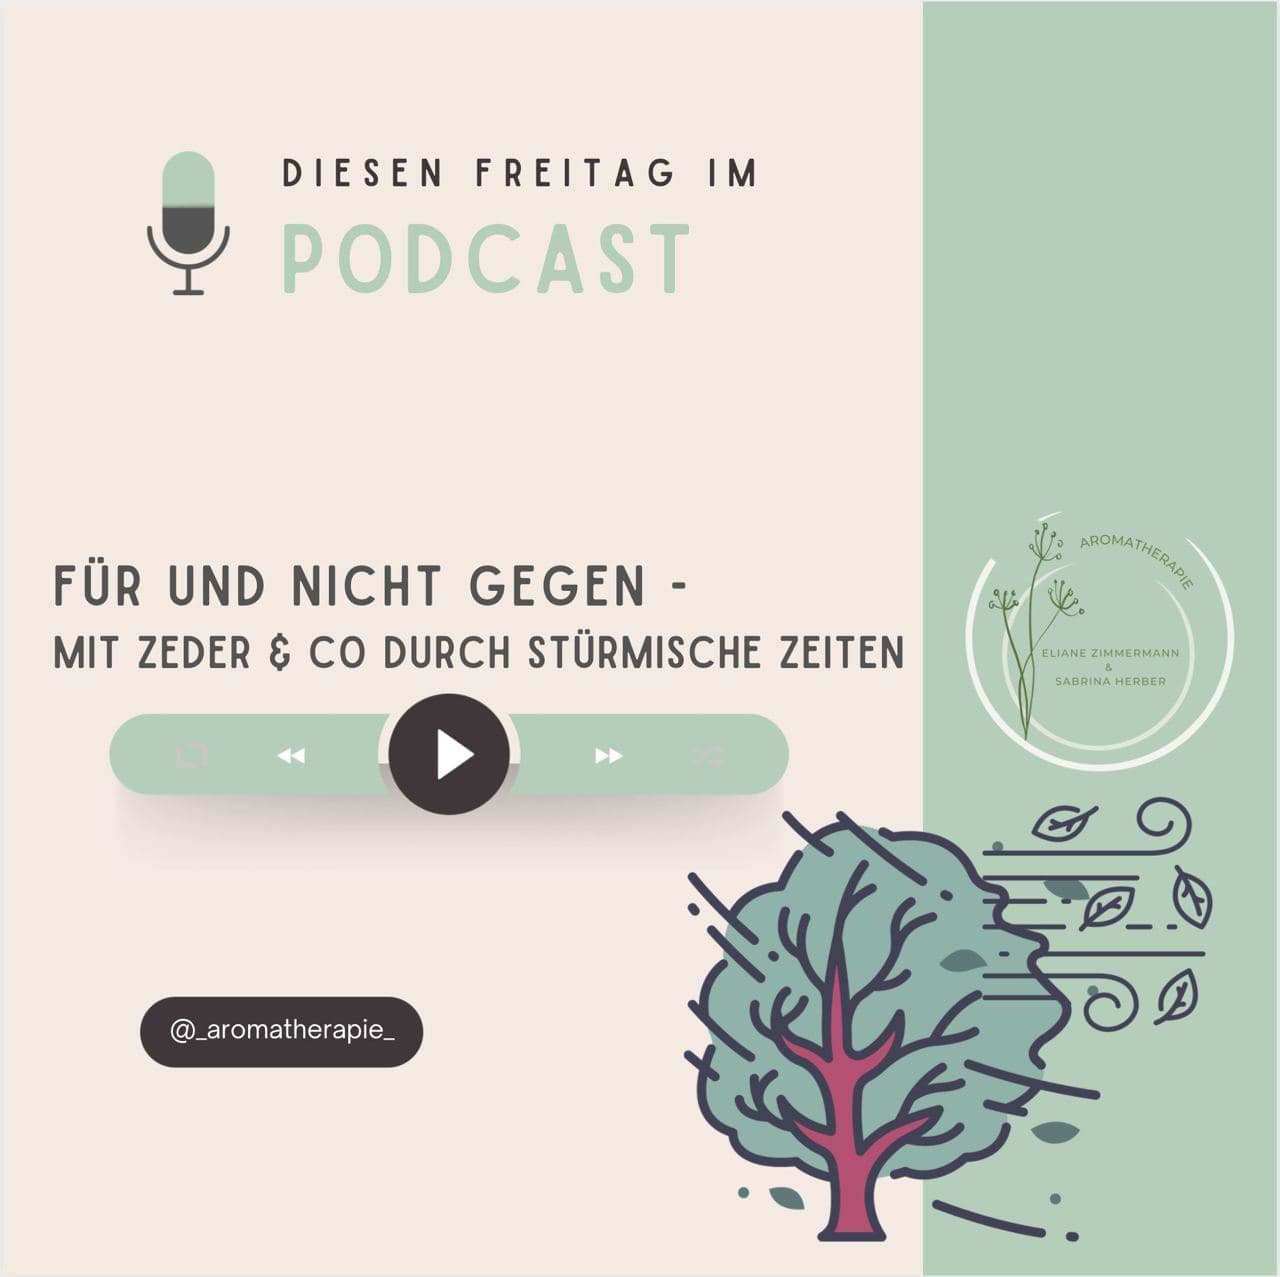 Podcast_Zeder_Aromatherapie